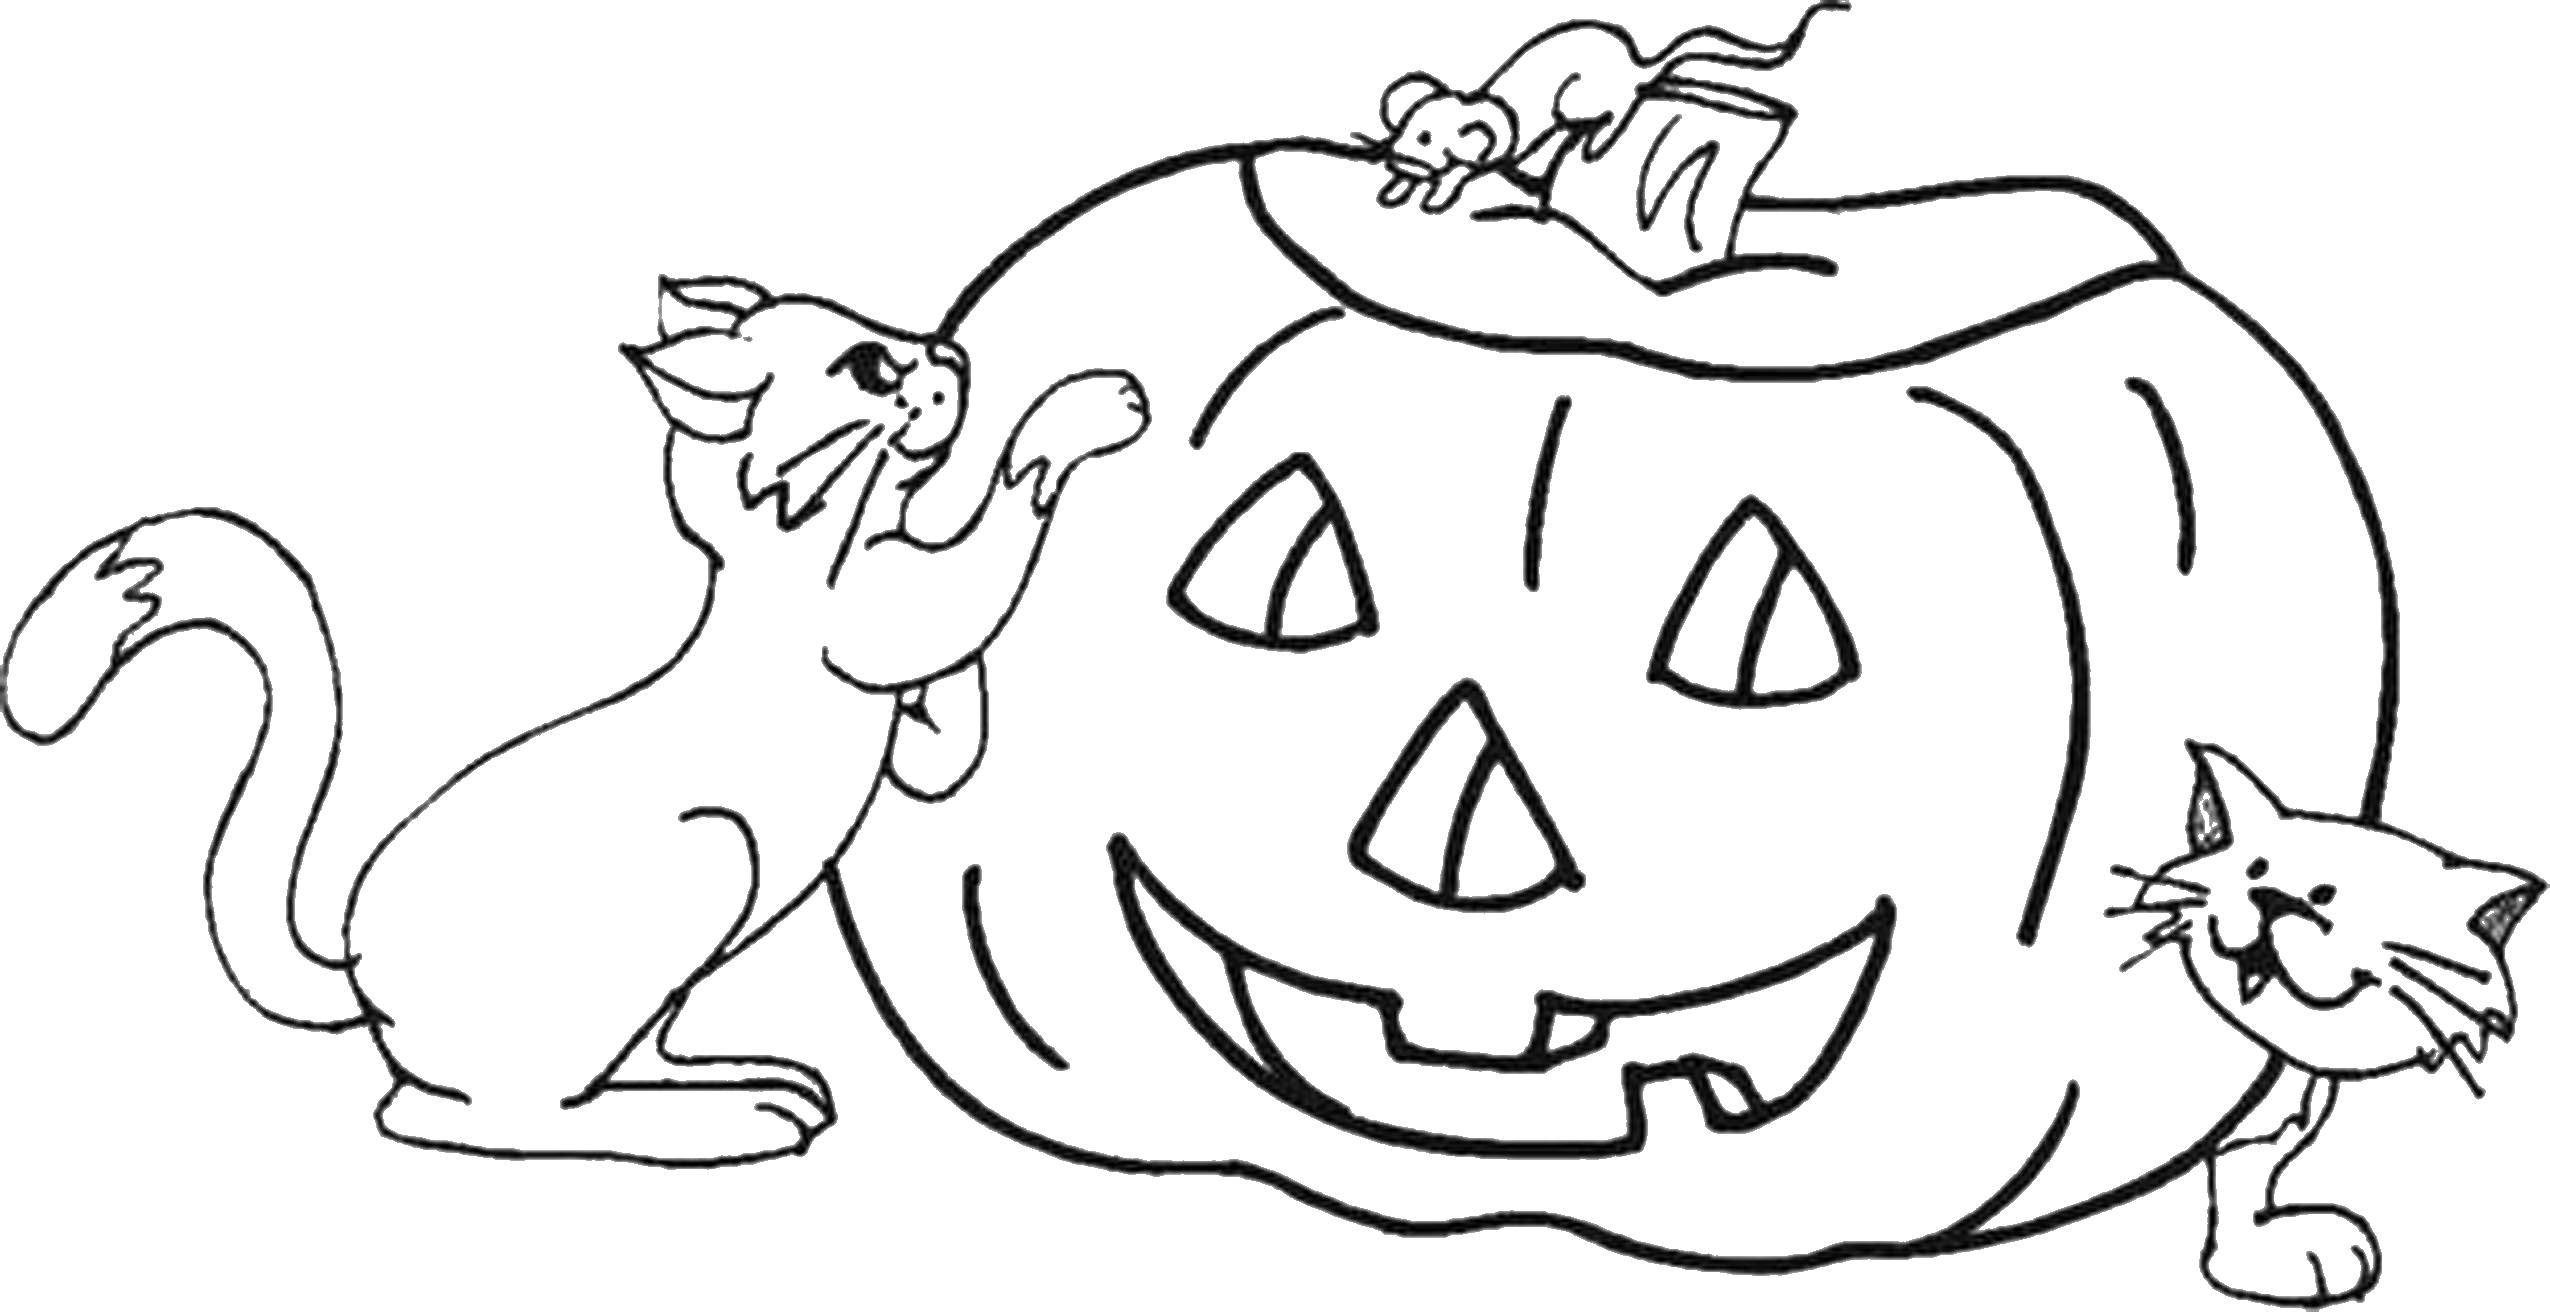 Coloring Cat a pumpkin. Category pumpkin Halloween. Tags:  pumpkin, Halloween, holiday.